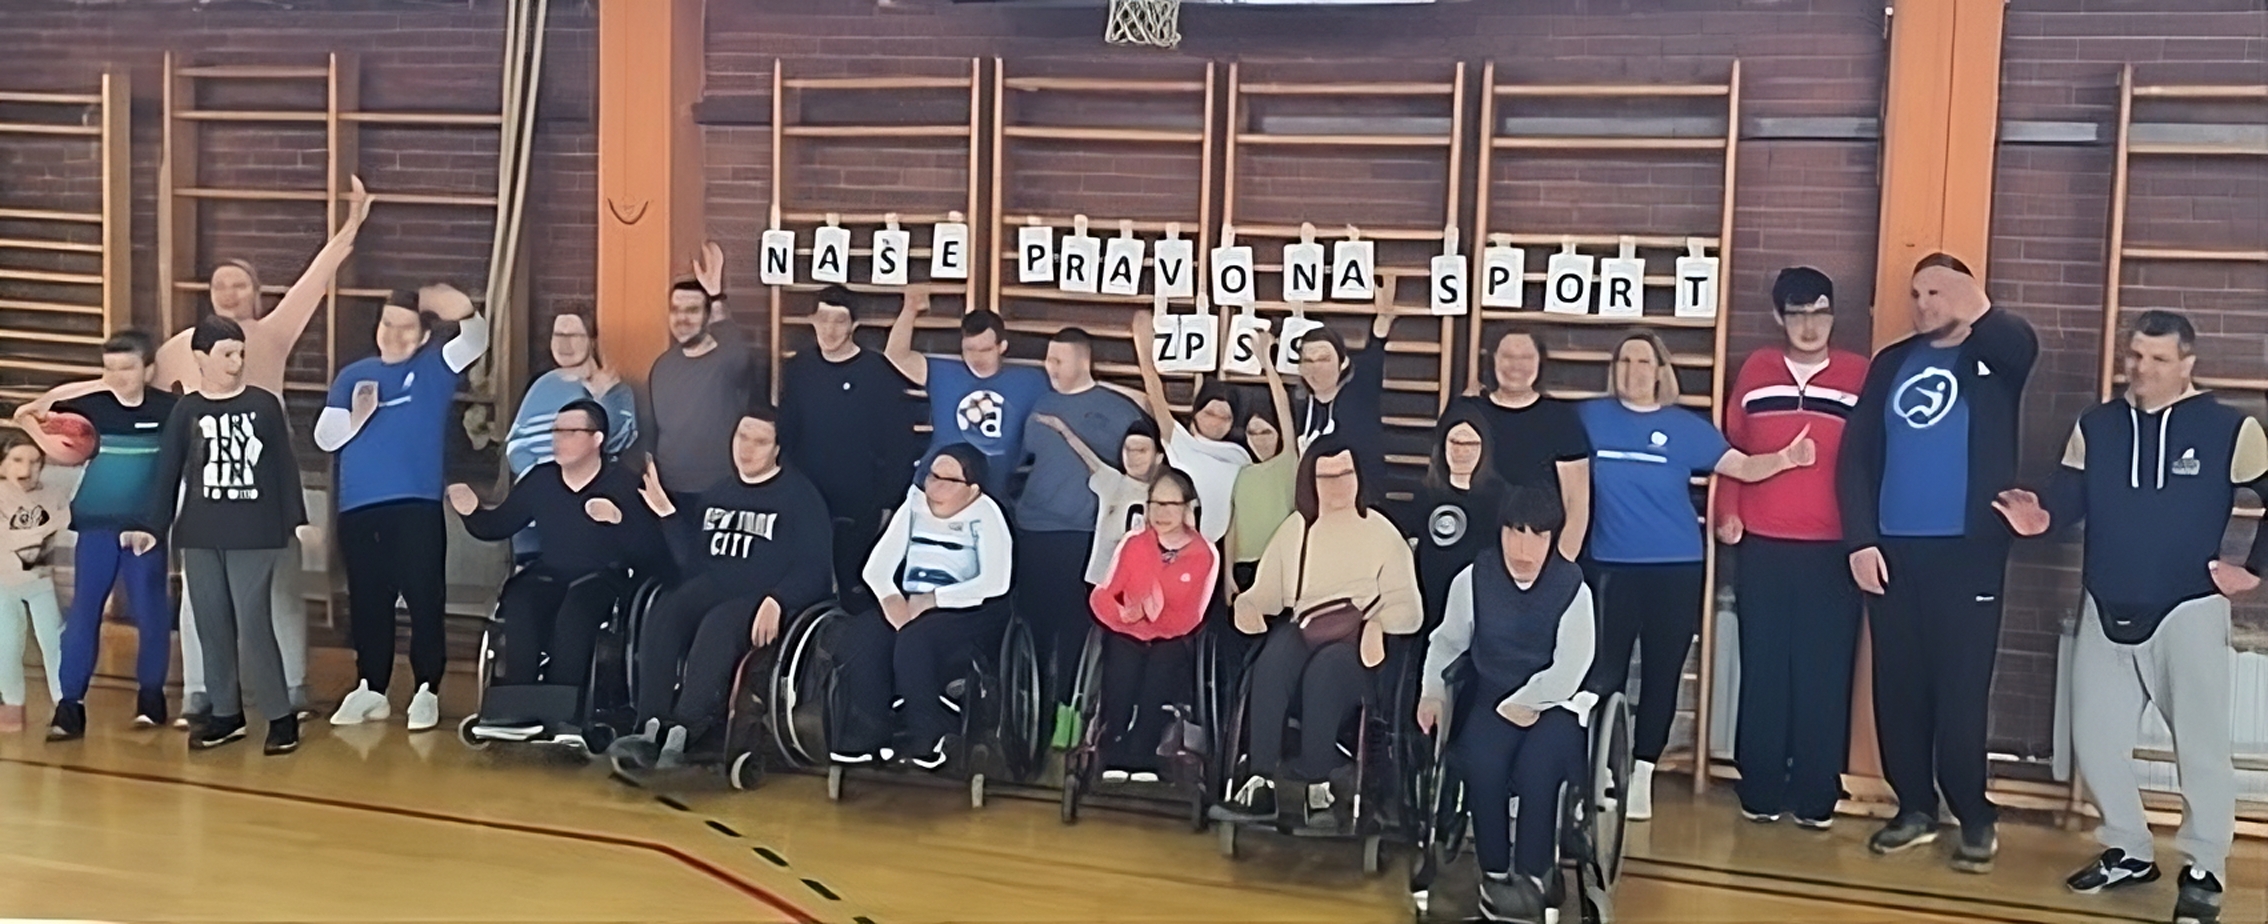 Na slici je grupa ljudi u sportskoj dvorani. Neki od njih su u kolicima, dok drugi stoje. Iza njih je transparent s tekstom.